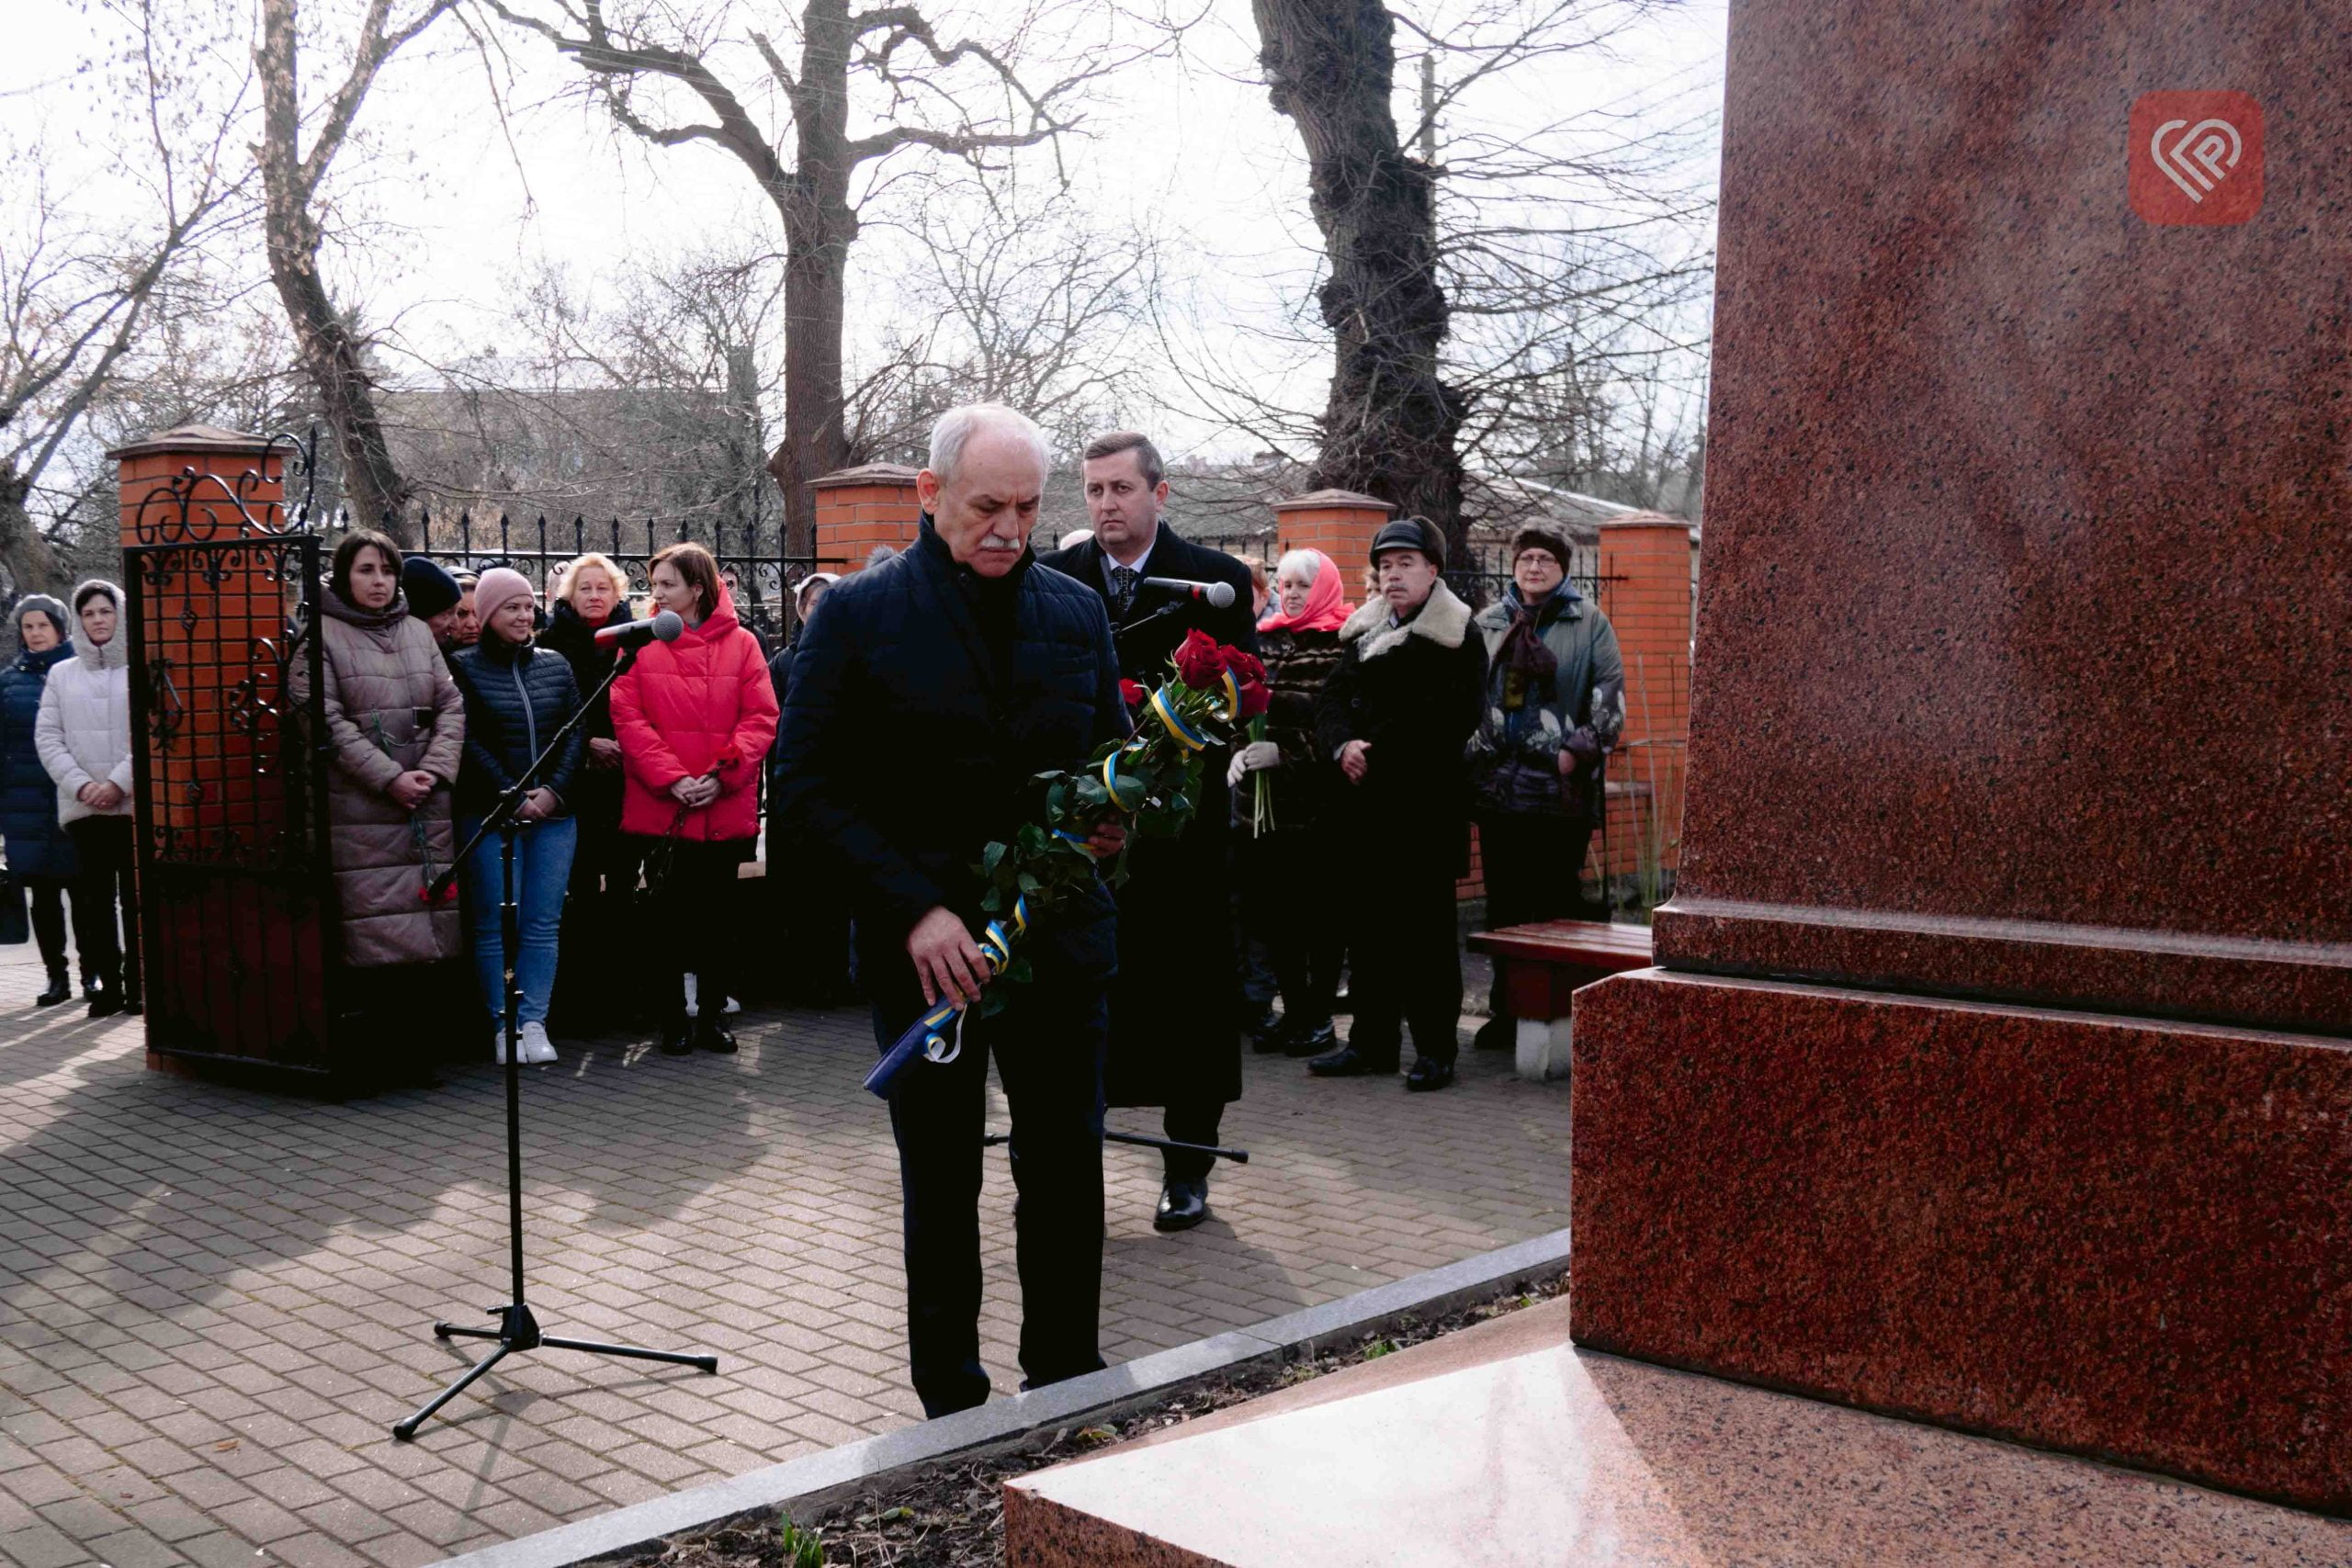 Сьогодні у Переяславі відбувся урочистий мітинг з нагоди 209 річниці від дня народження Тараса Шевченка